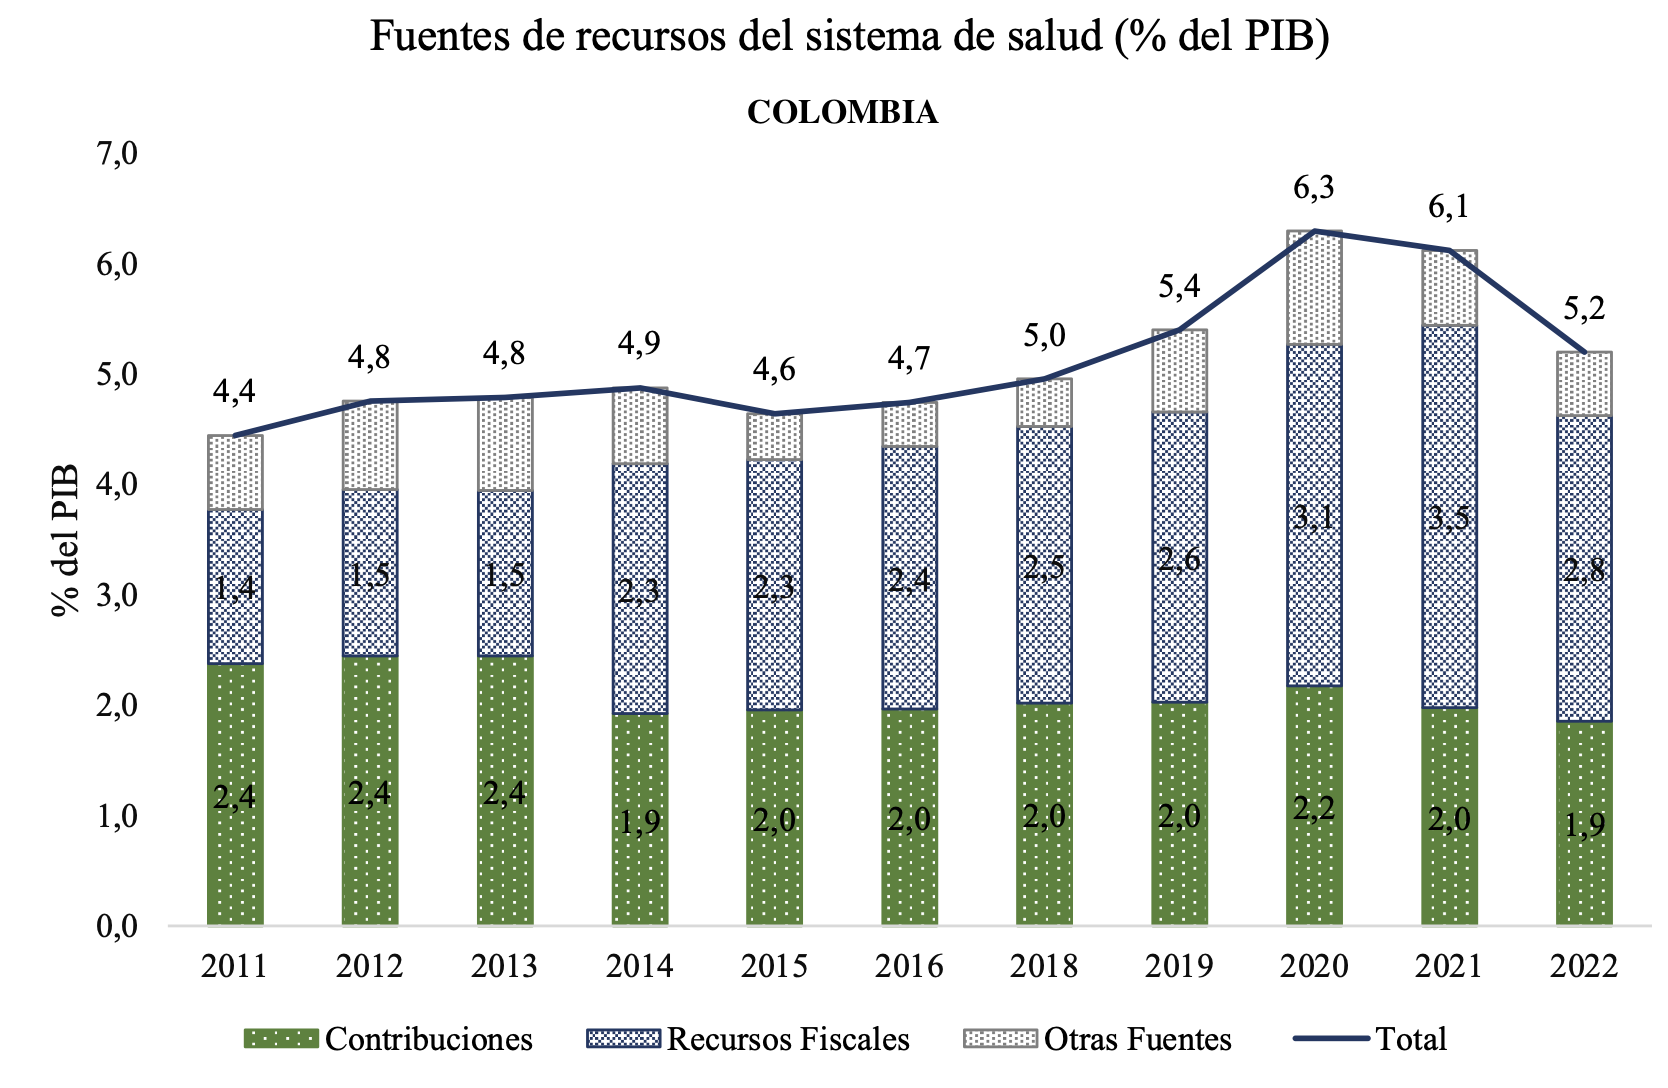 Источники и использование финансирования системы здравоохранения в Колумбии